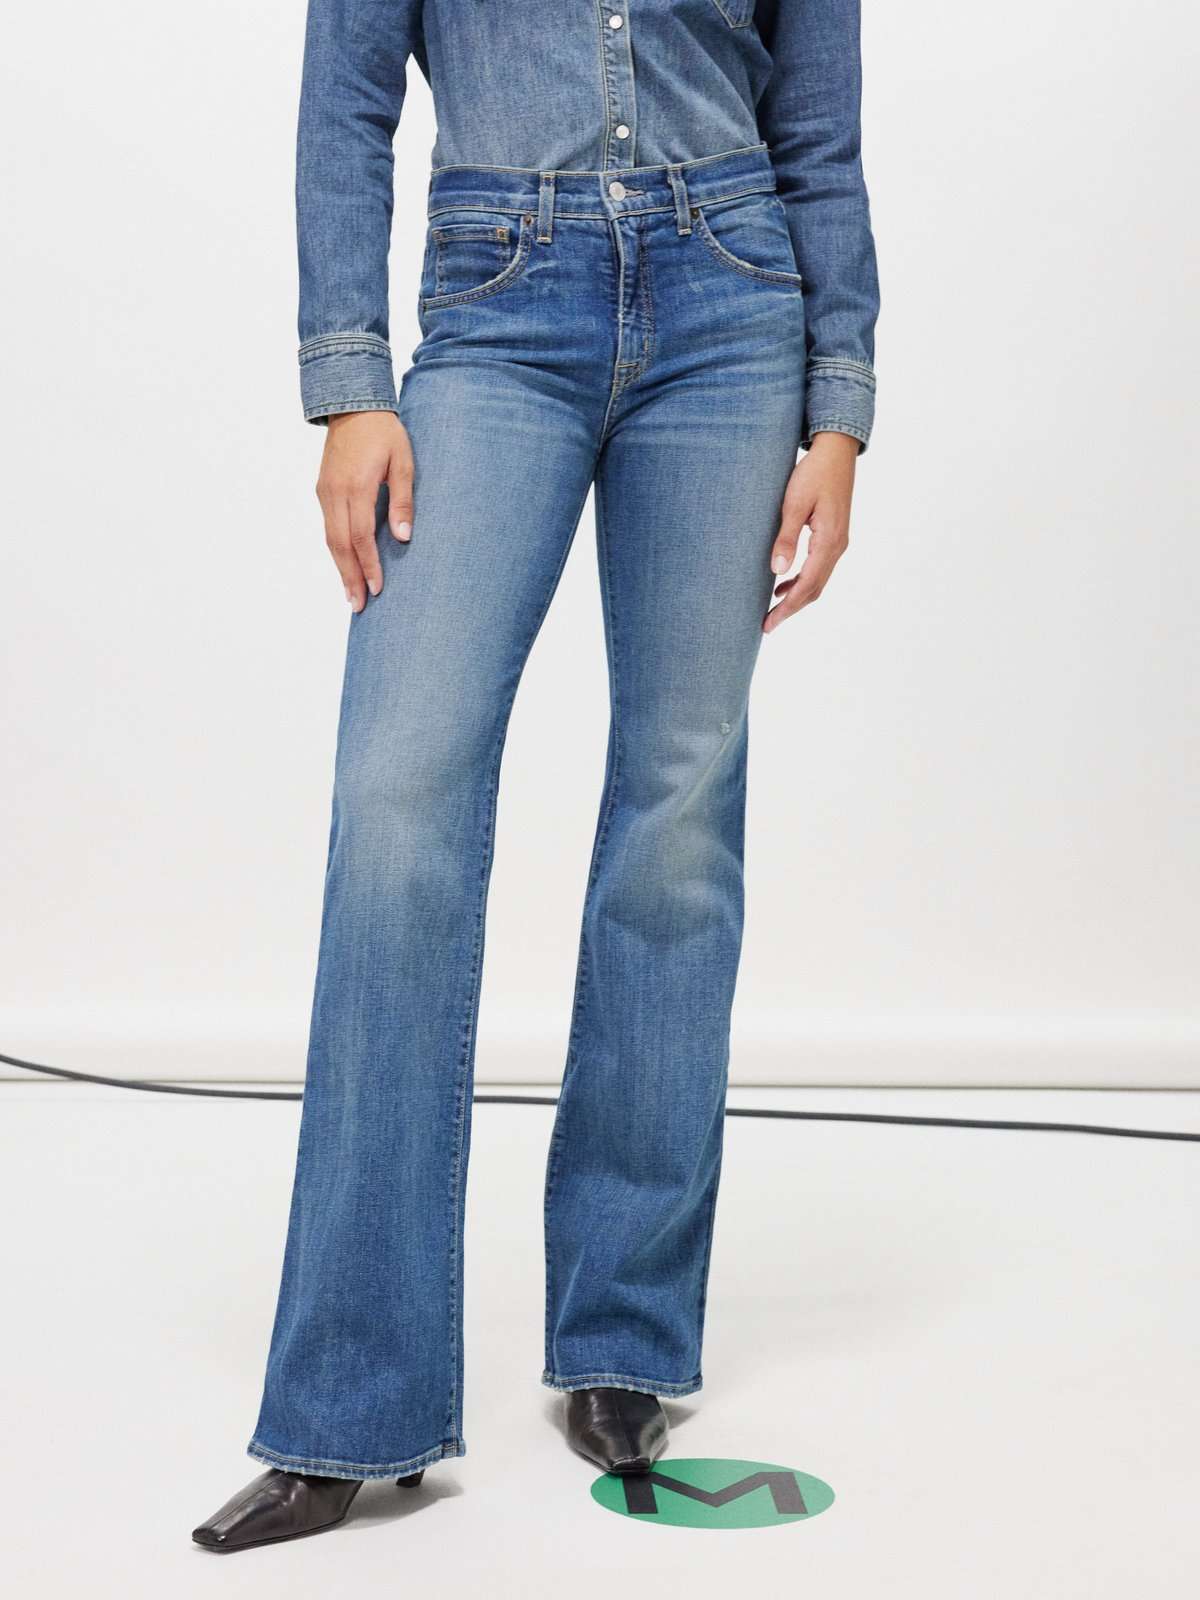 джинсы Celia с короткими рукавами